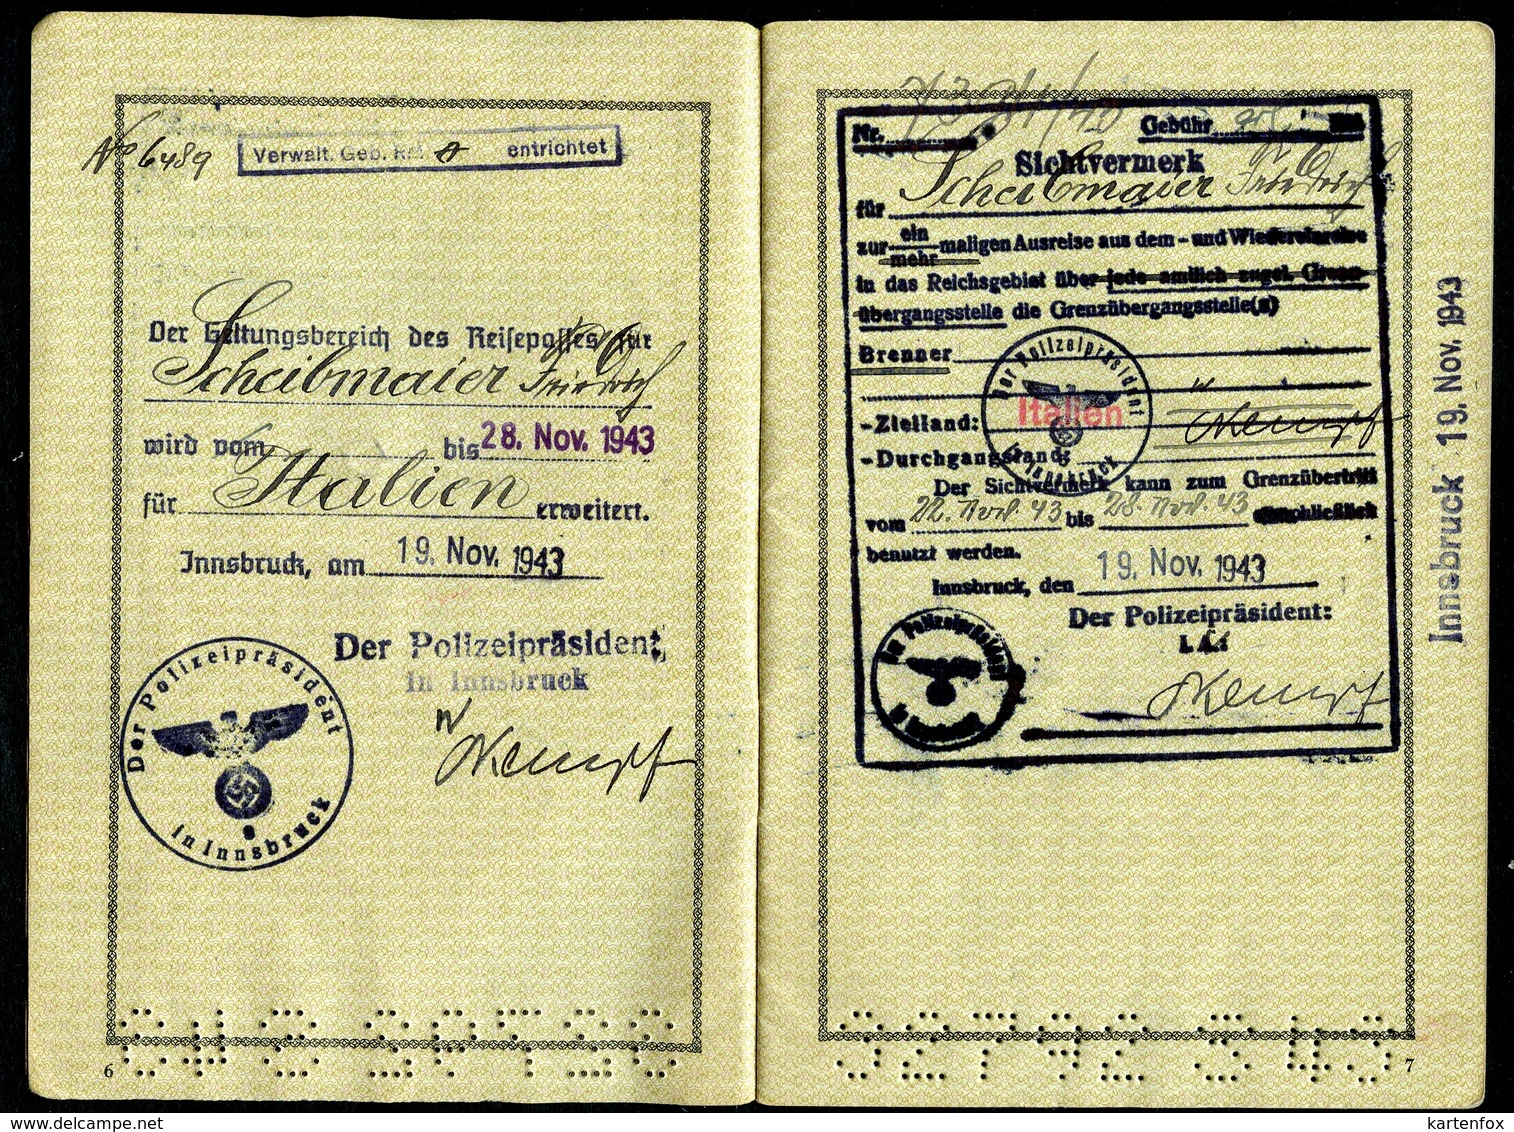 Reisepass, Deutsches Reich, 4.11.1943, WW2 1939 – 1945, Innsbruck, Verlängerung,Sichtvermerk,Arco, - Historische Dokumente